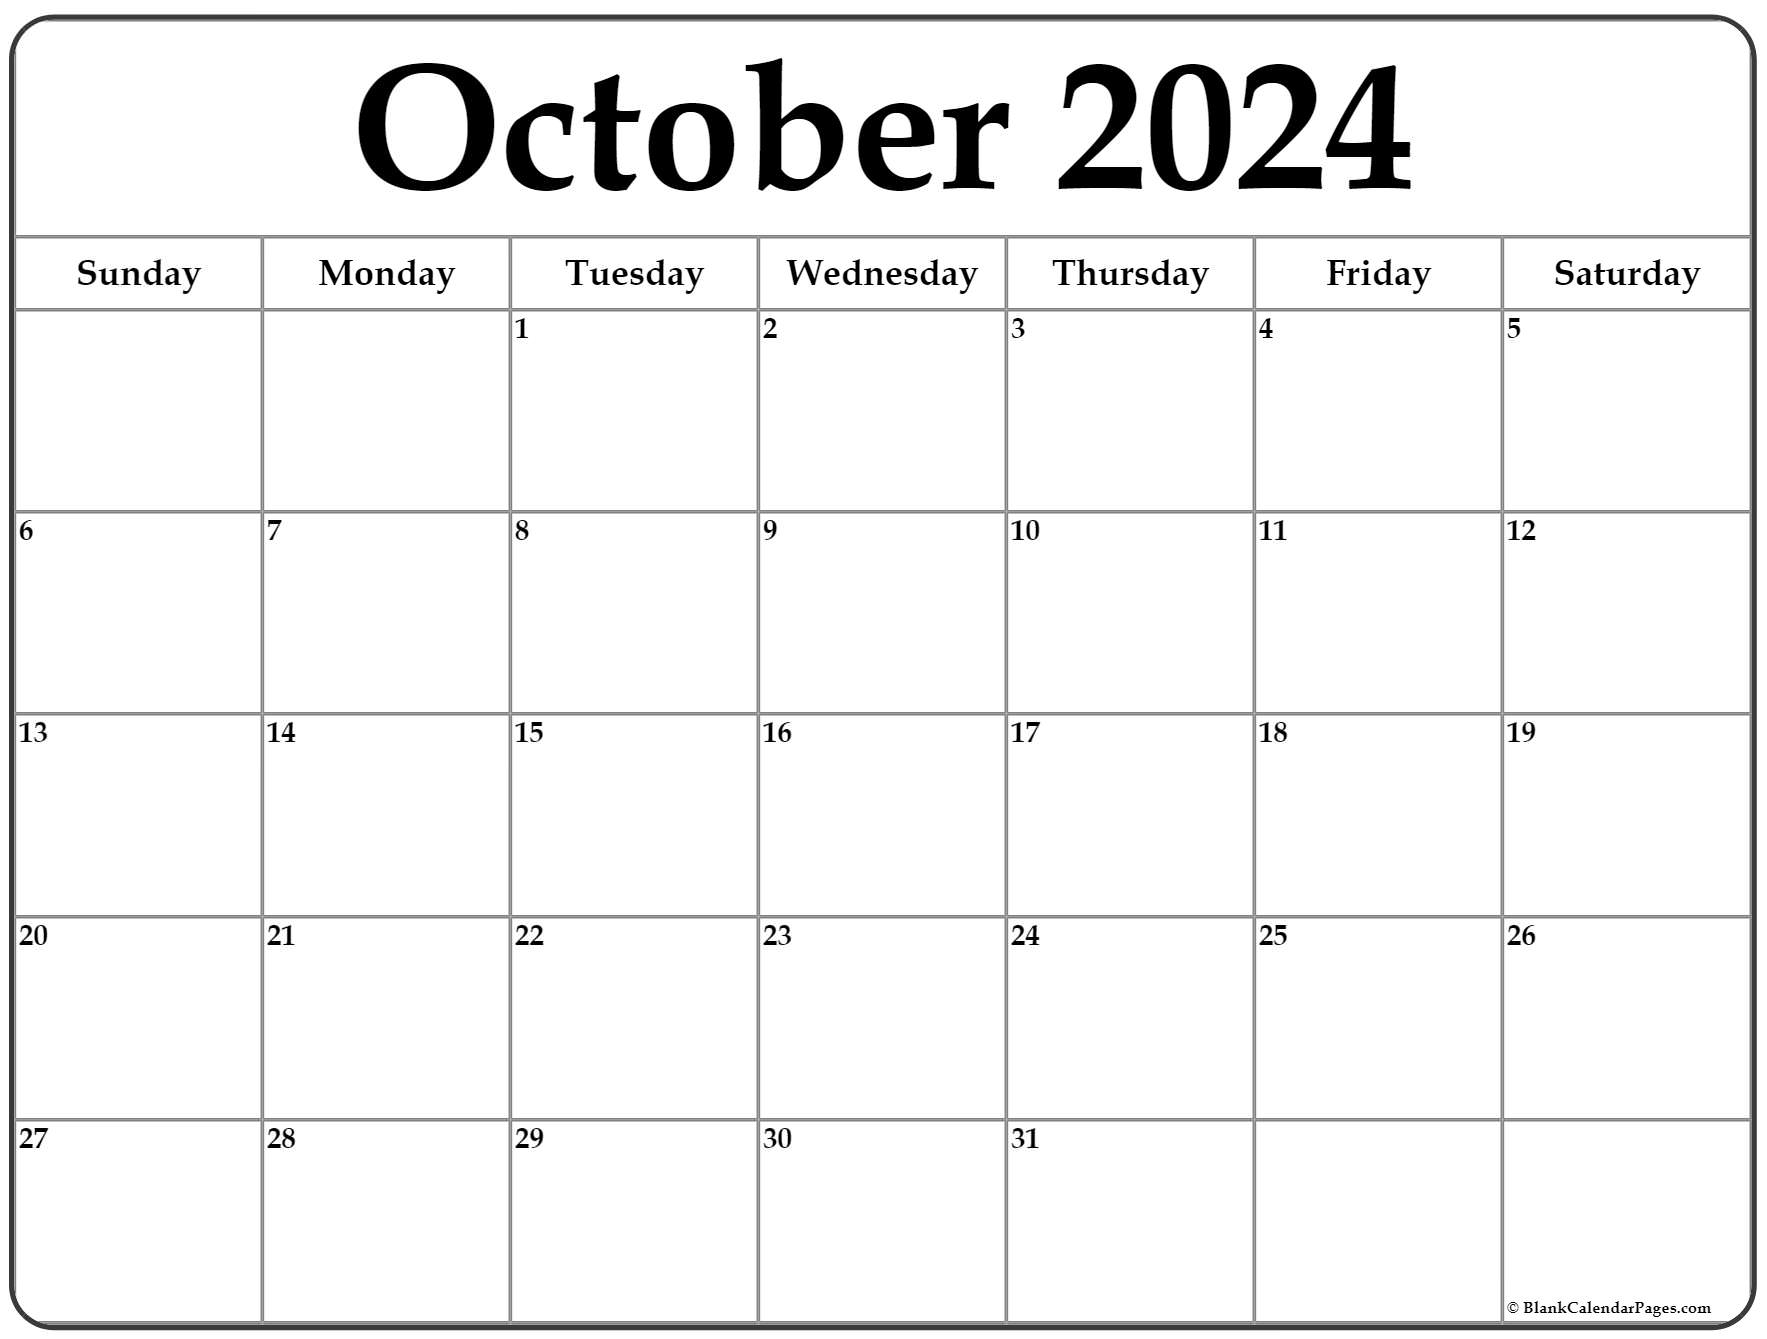 October Blank Calendar 2022 October 2022 Calendar | Free Printable Calendar Templates